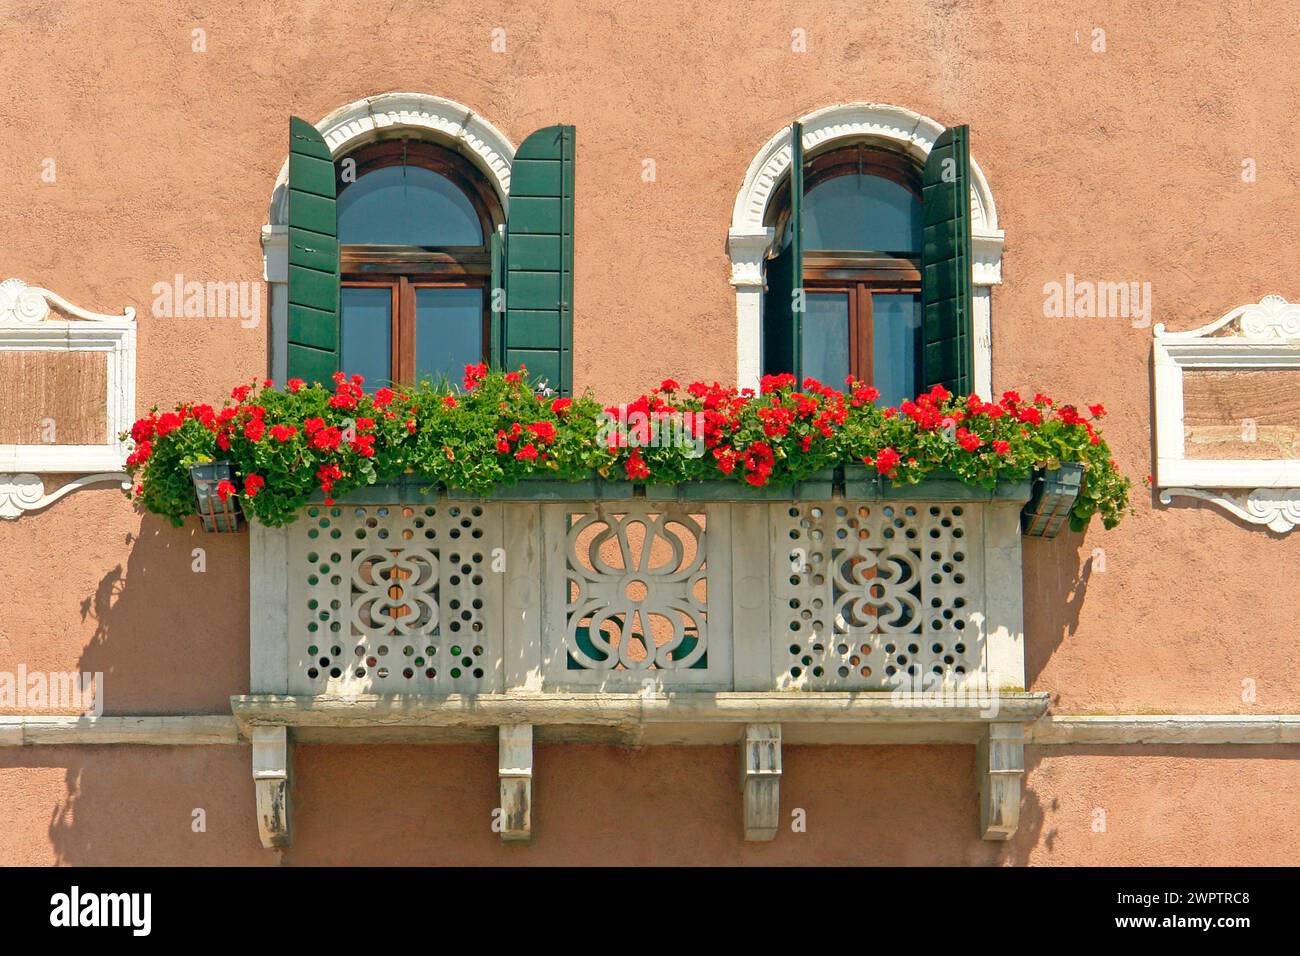 Un balcon avec géraniums rouges, Venise, Italie Banque D'Images